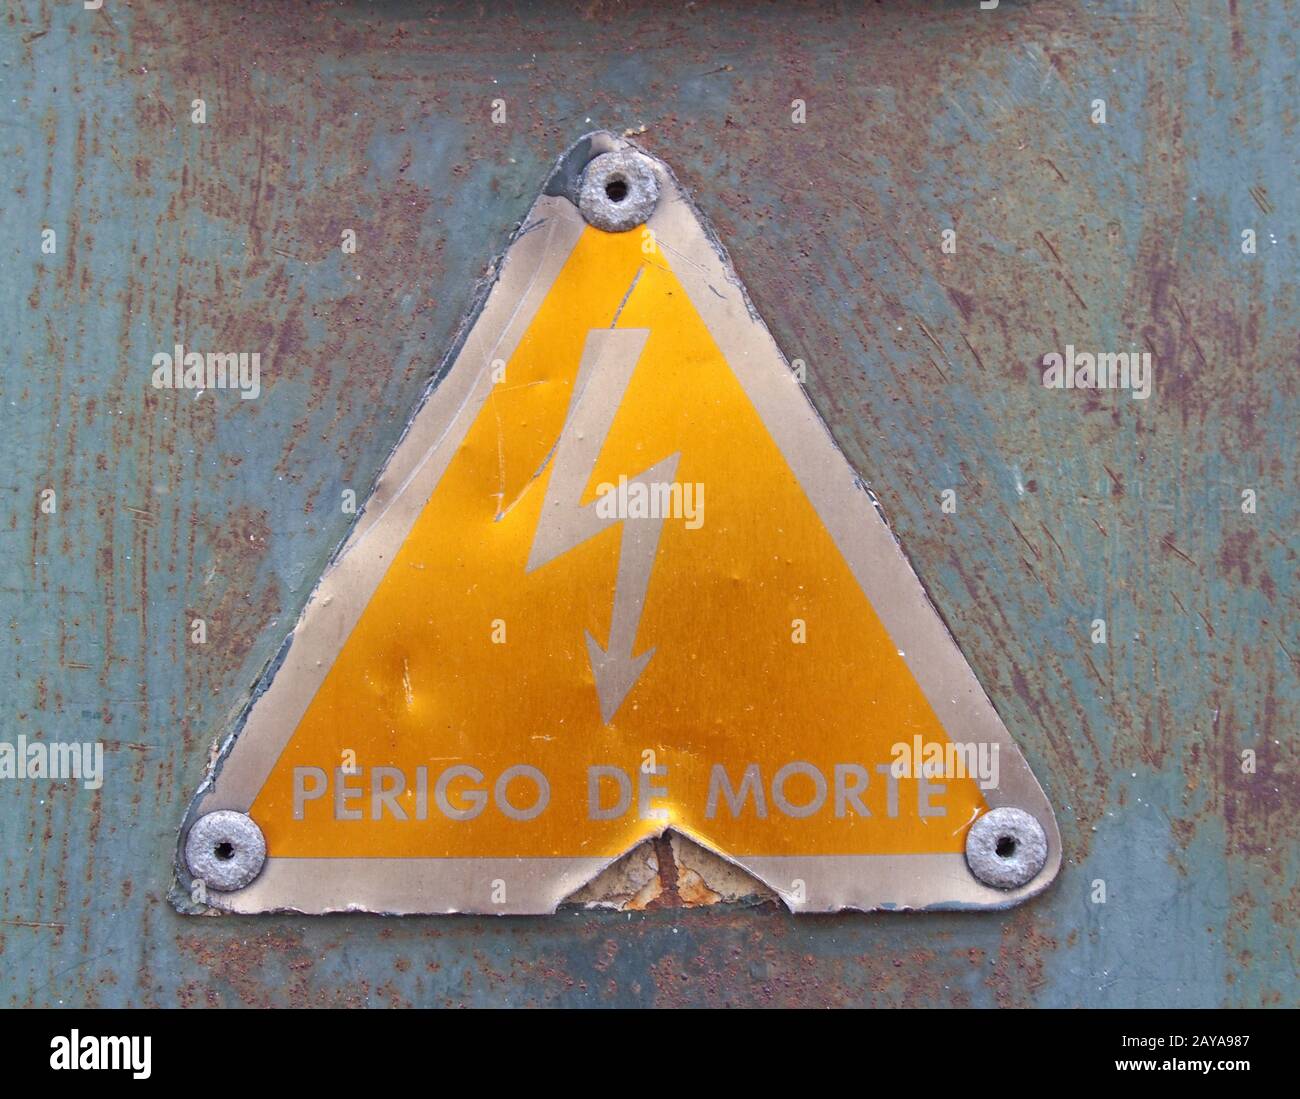 Un vieux métal triangulaire jaune portugais signe de sécurité de l'électricité avec un symbole lumineux perigo de morte - transla Banque D'Images